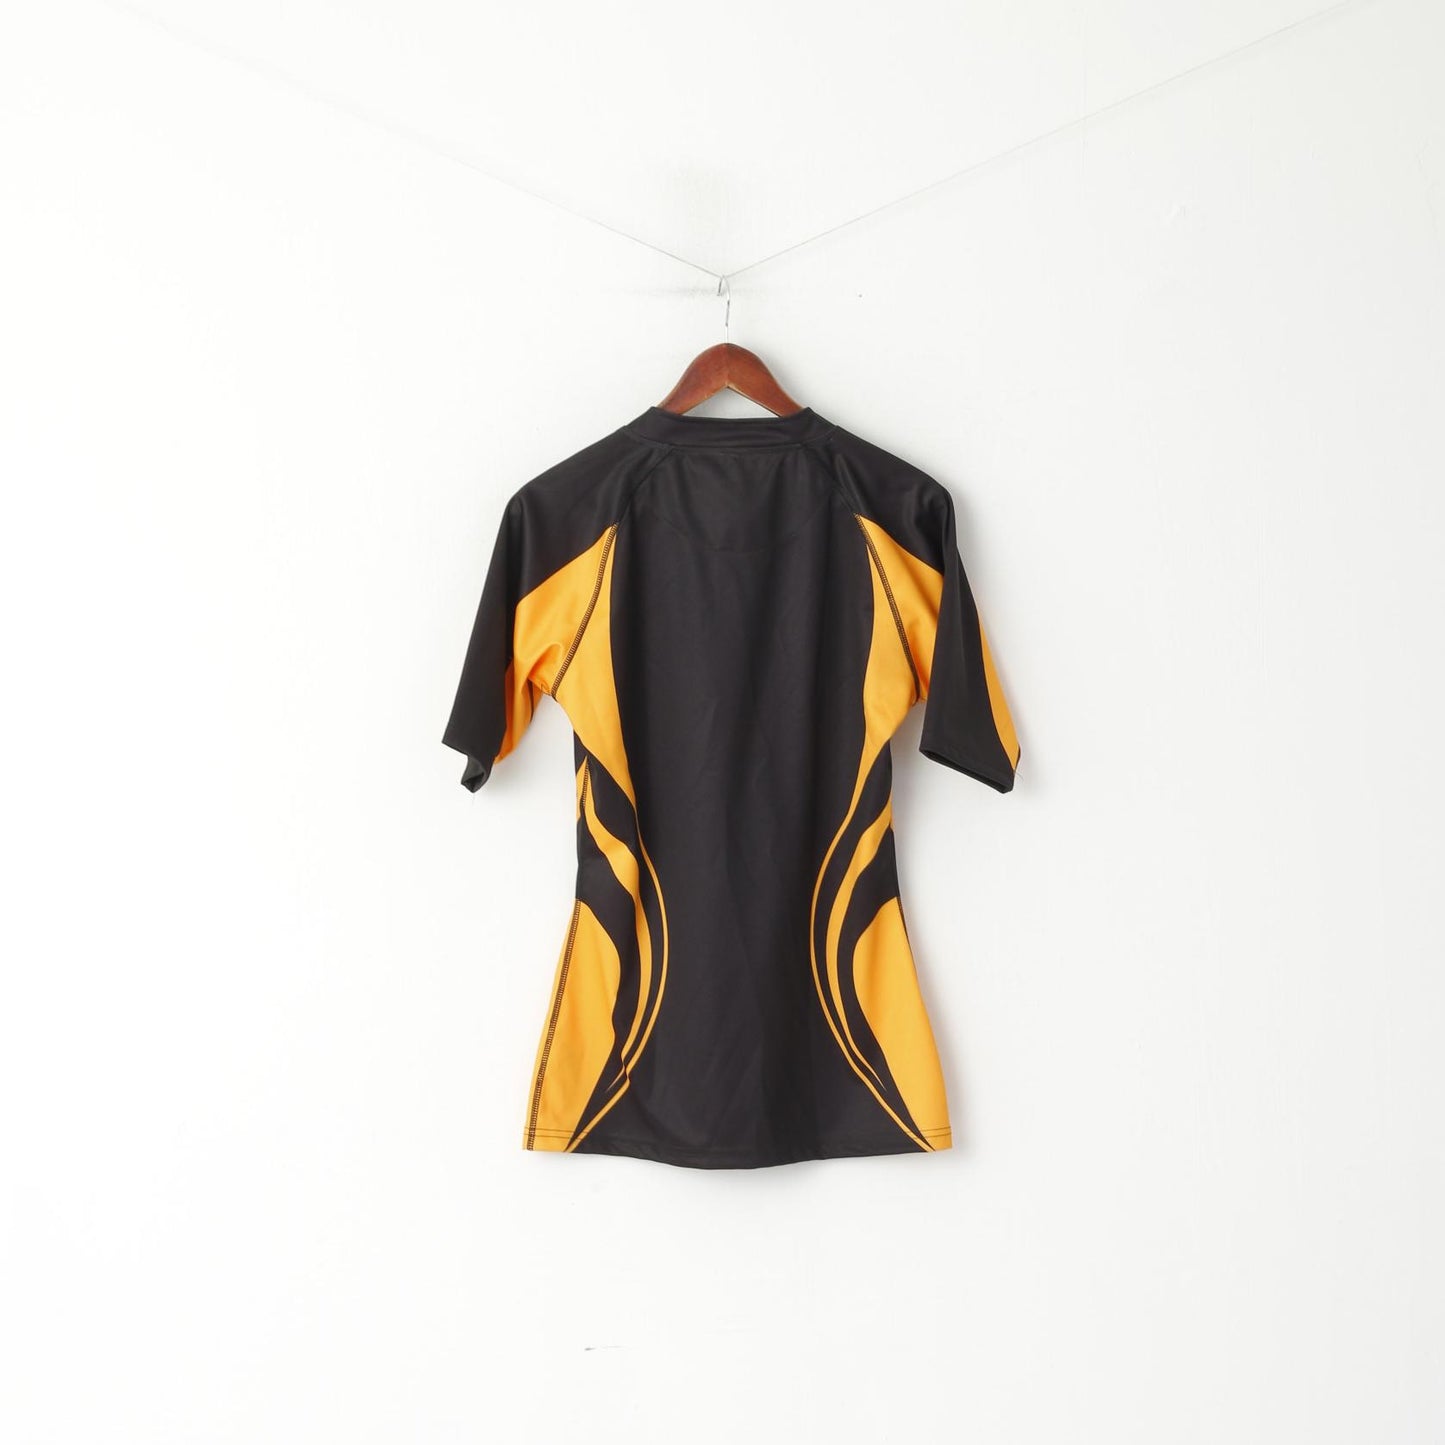 Nuova maglietta Kooga da donna L nera, vestibilità aderente, curva, maglia da rugby